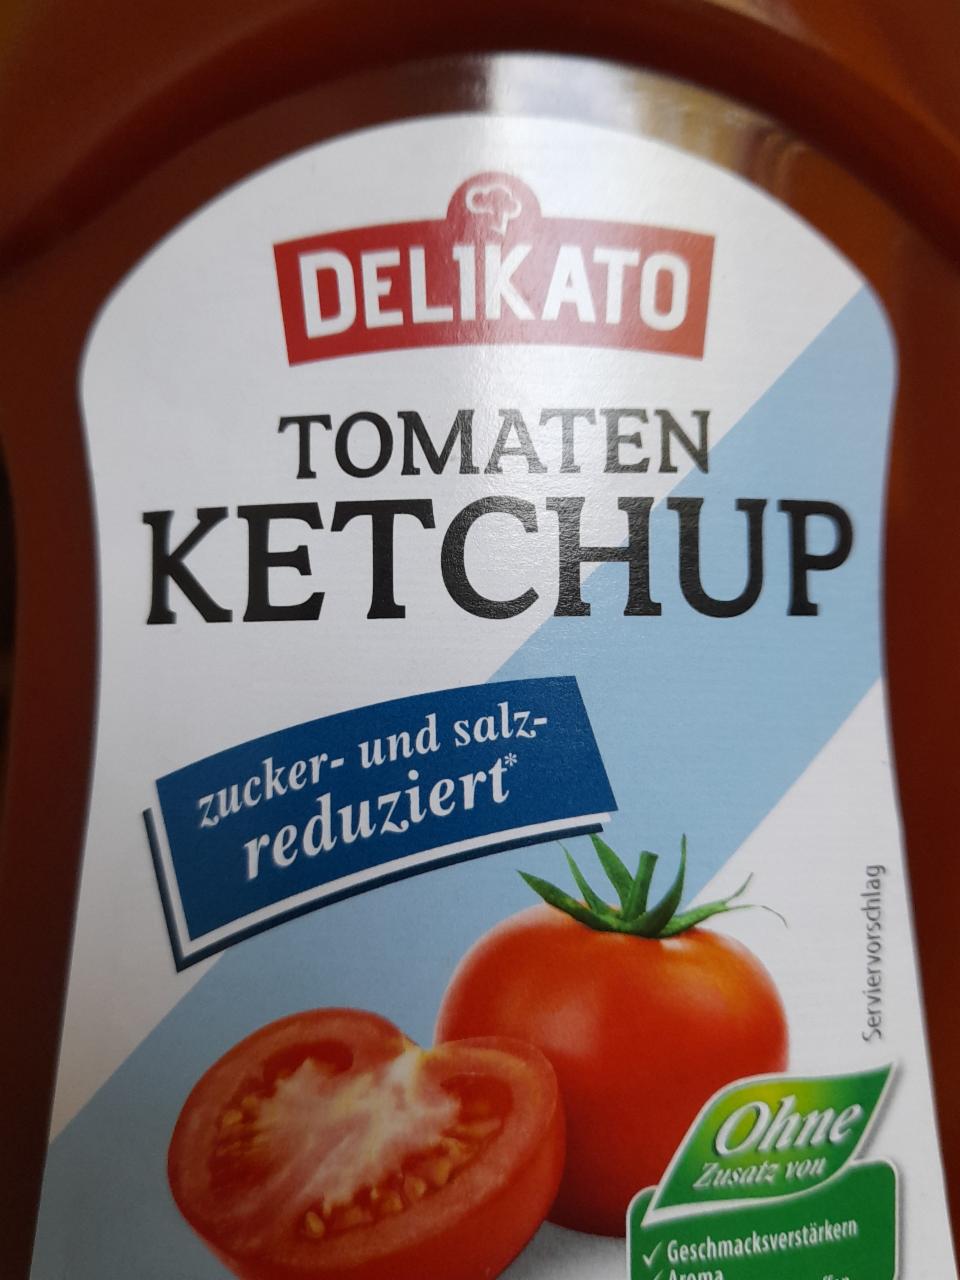 Fotografie - Tomaten Ketchup Delikato